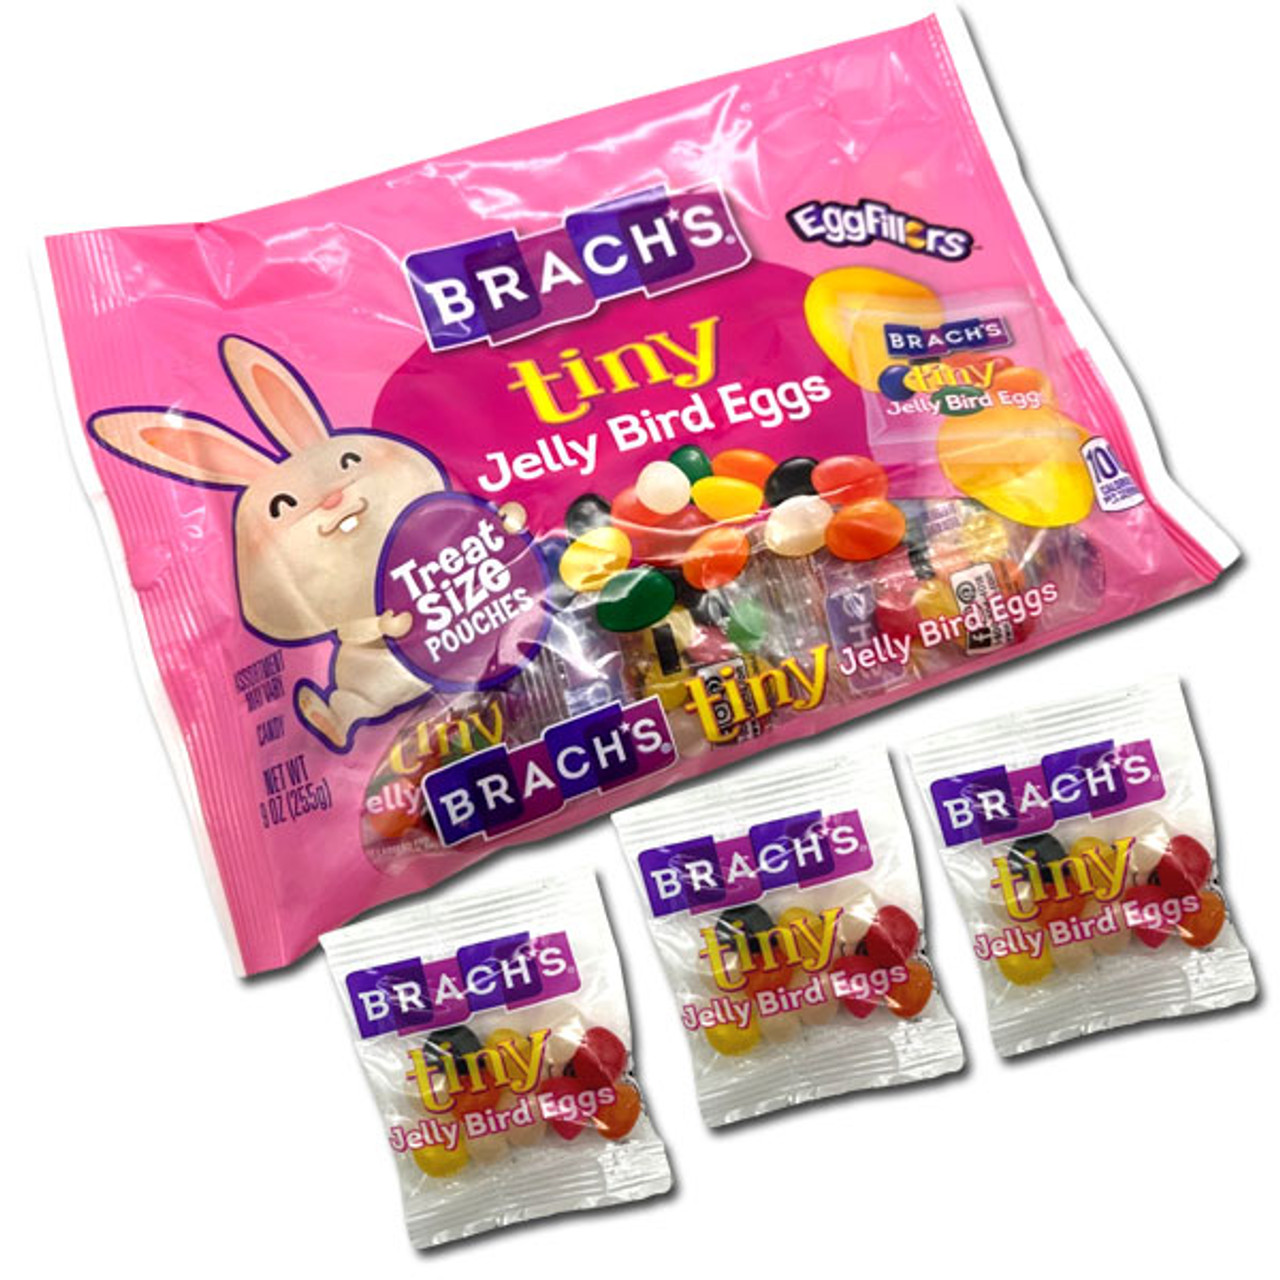 Brach's Traditional Jelly Bird Eggs Candy: 30-Ounce Bag